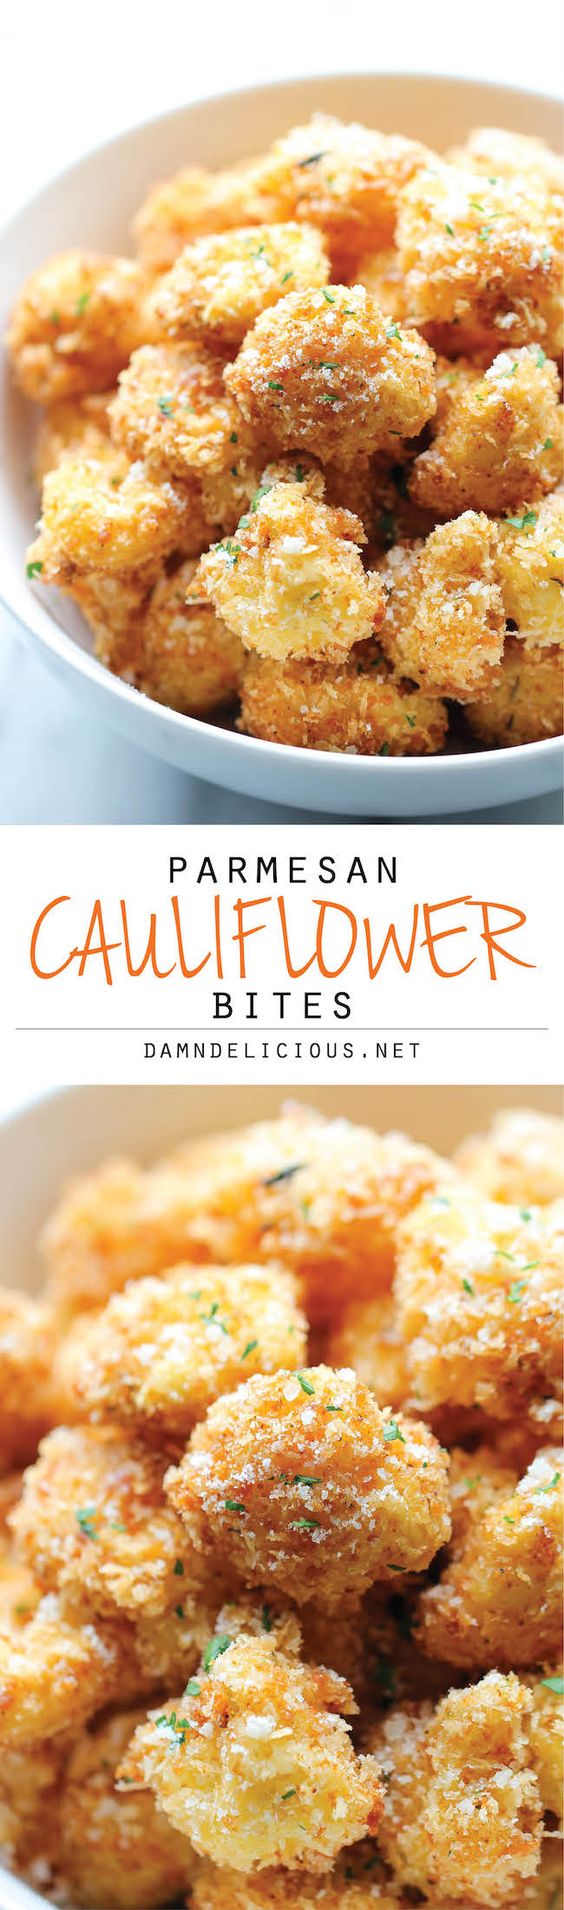 parmesan-cauliflower-bites